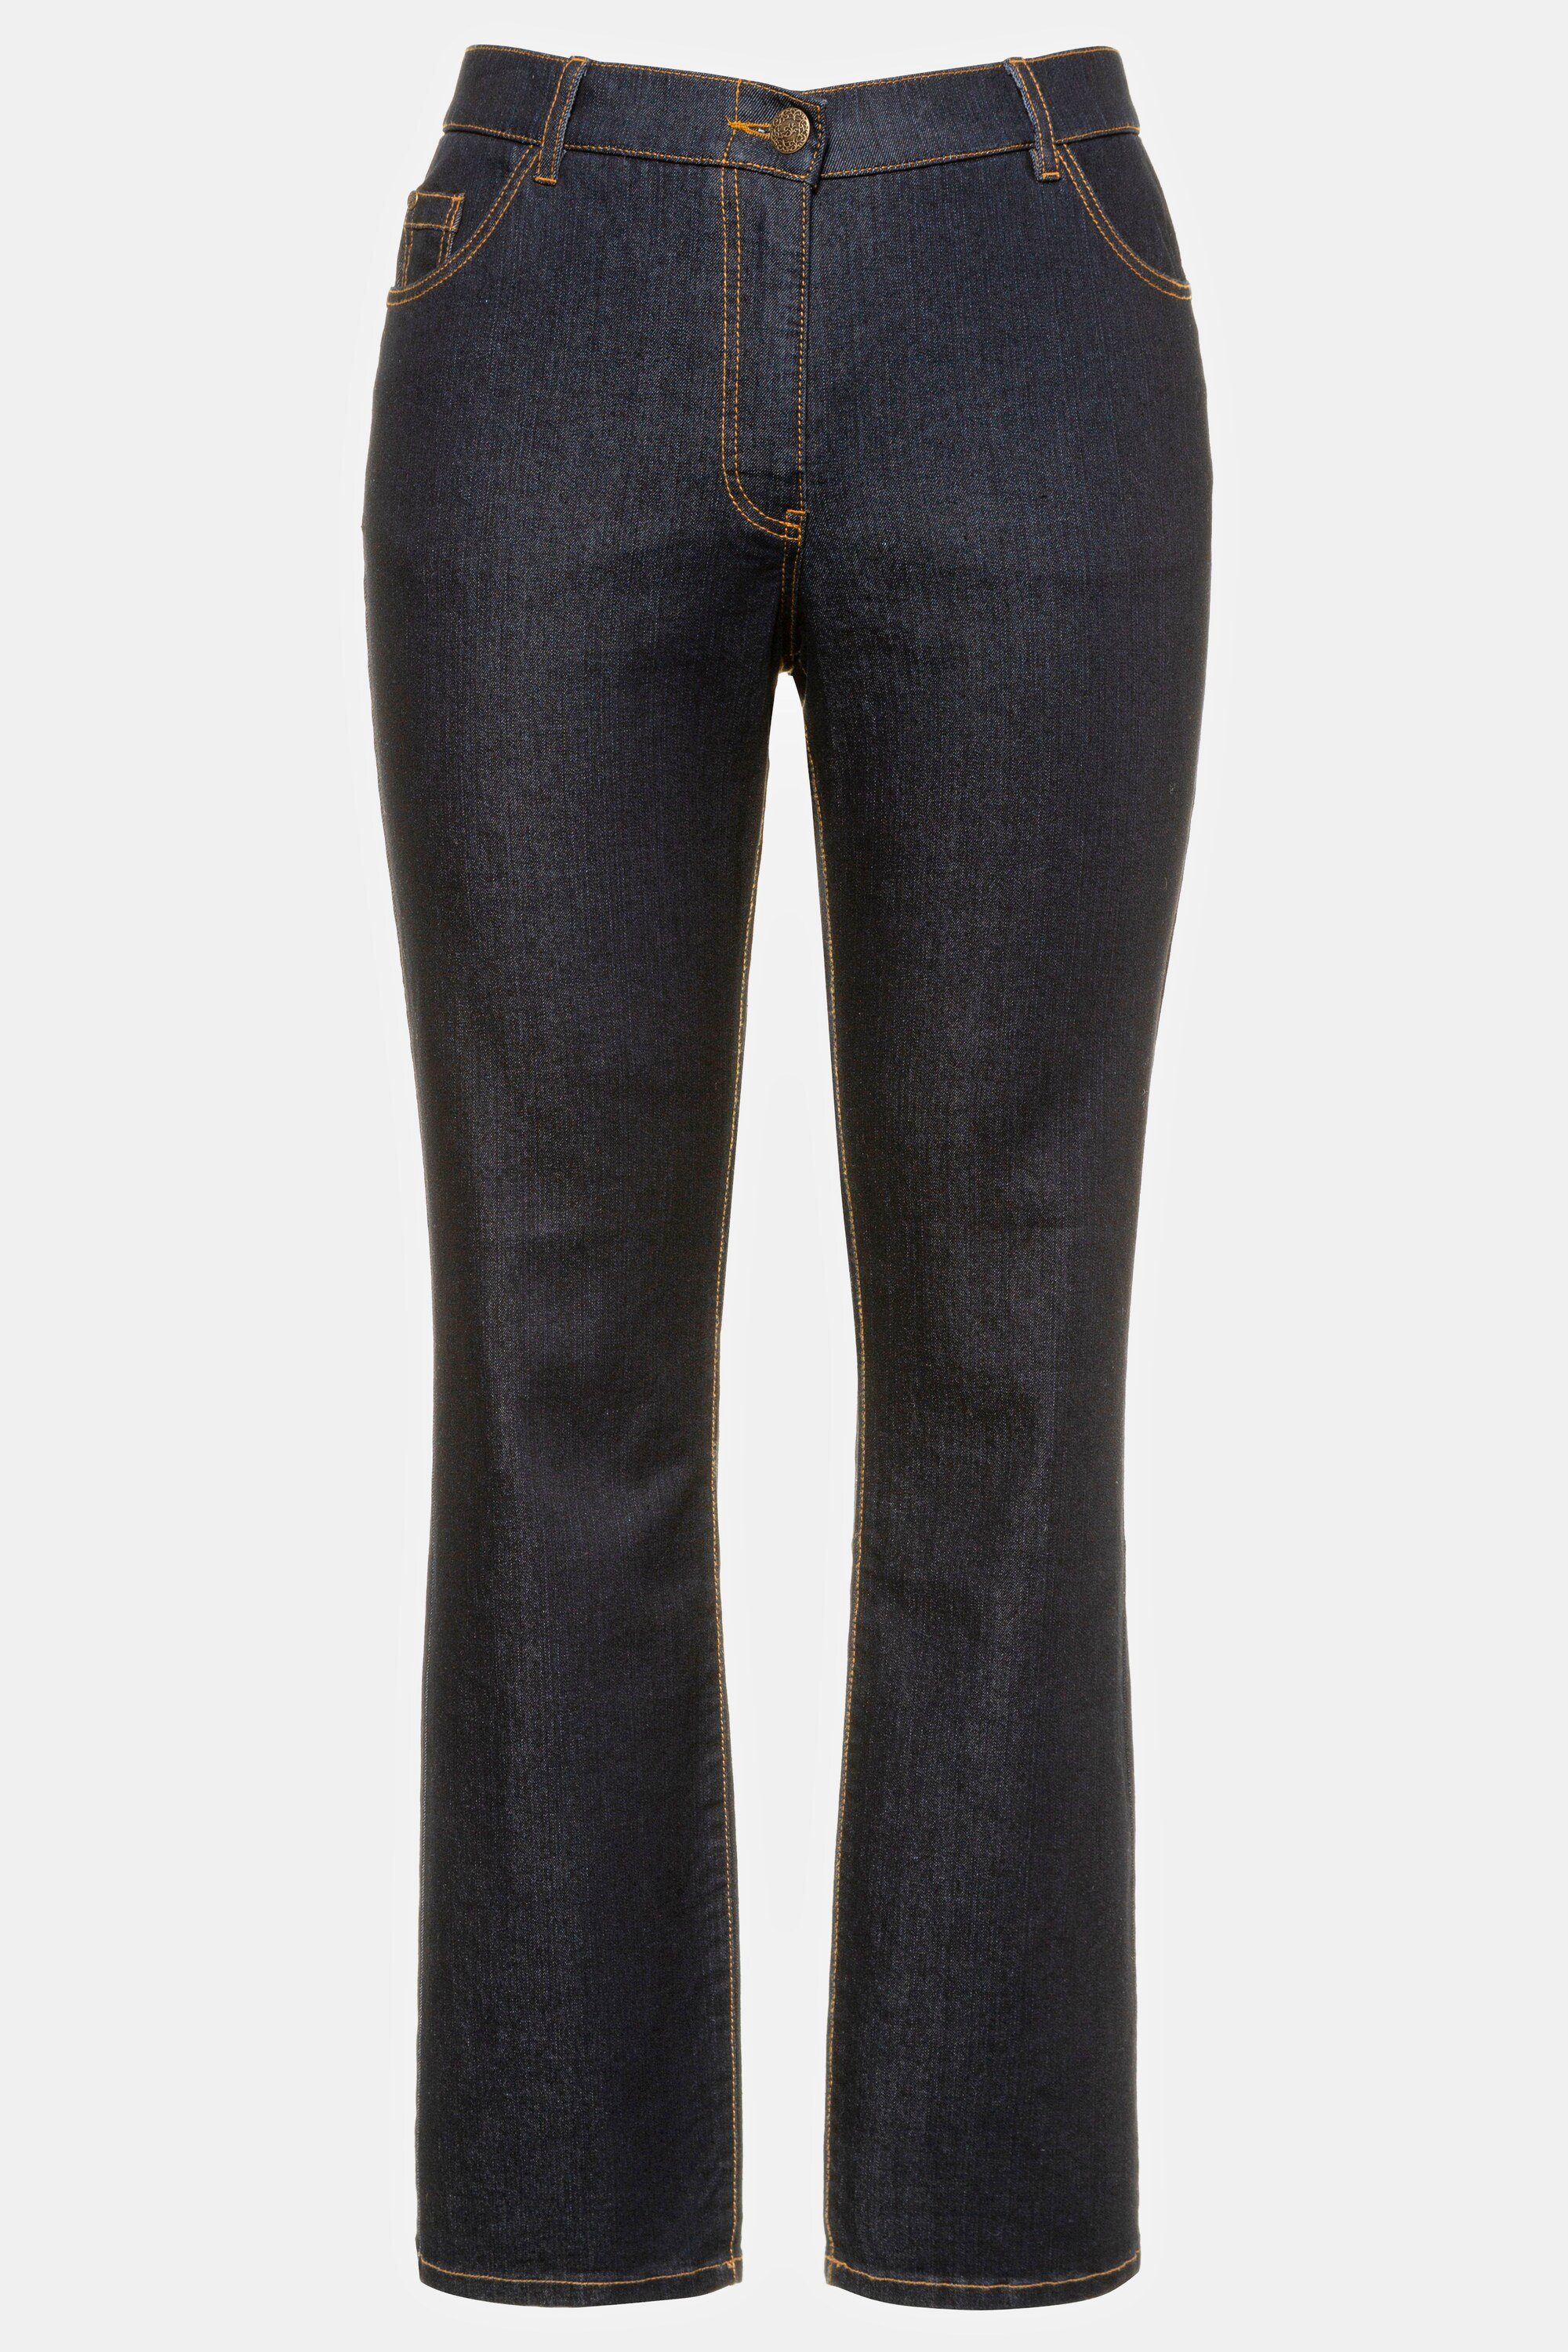 5-Pocket-Form Ulla Mandy dark Funktionshose Komfortbund gerade Jeans denim Popken blue